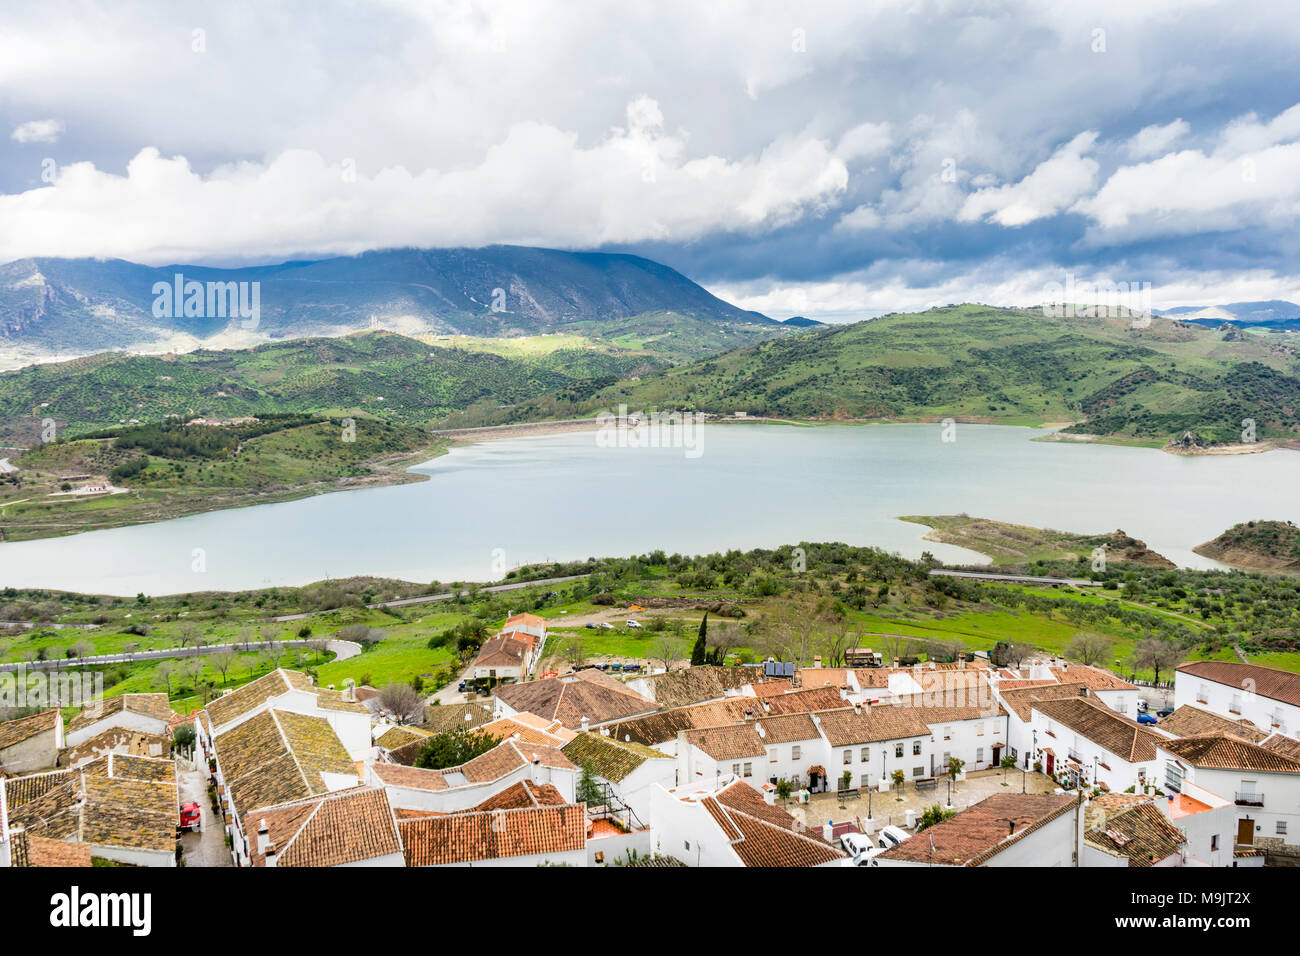 Vistas panorámicas sobre el pueblo de Zahara de la sierra hacia el embalse Zahara-El Gastor (Embalse de Zahara), un lago artificial en Andalucía, España Foto de stock